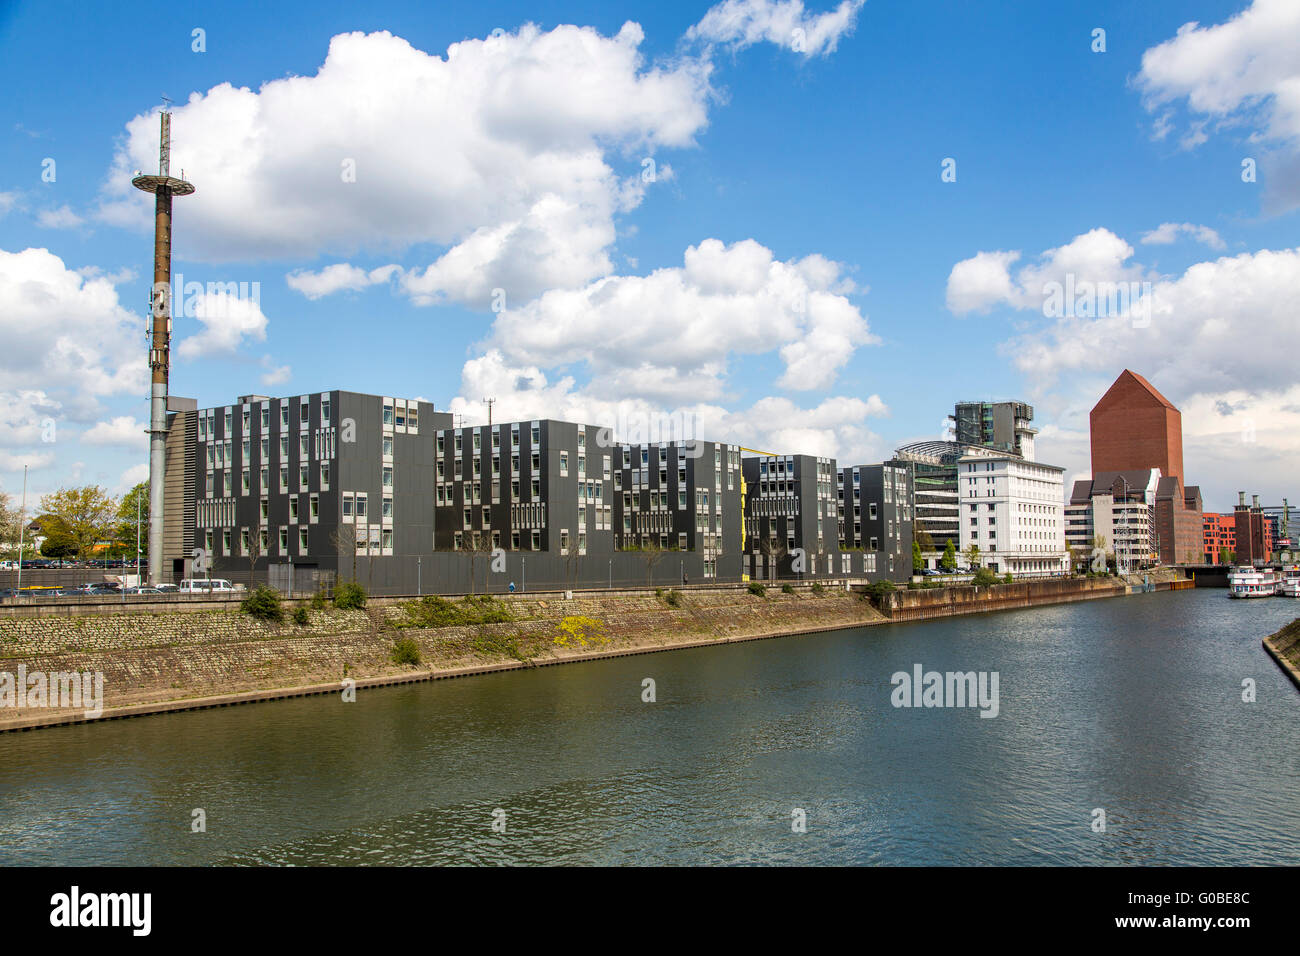 La Innenhafen Inner Harbour, Duisburg, era un puerto central al río Rin, transformado en un espacio cultural, oficina y lugar vivo, Foto de stock